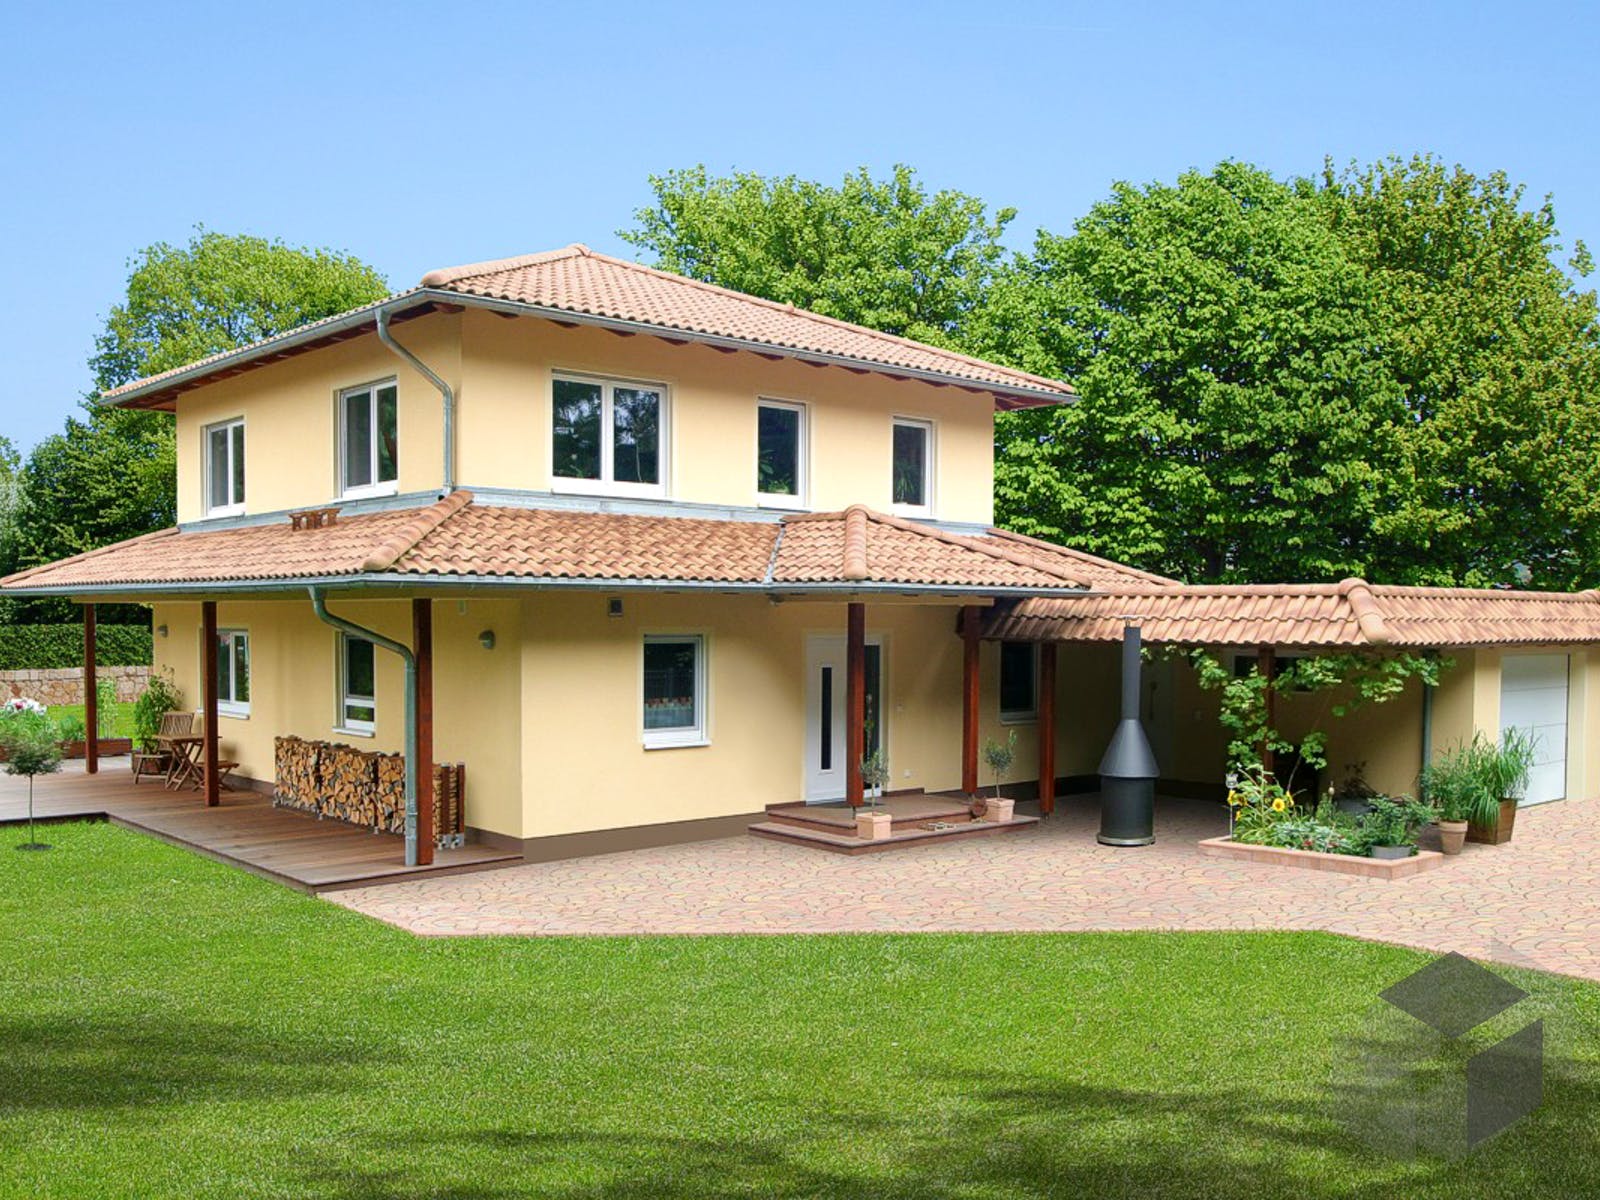 Einfamilienhaus Villa Toscana von EBH Haus | Fertighaus.de